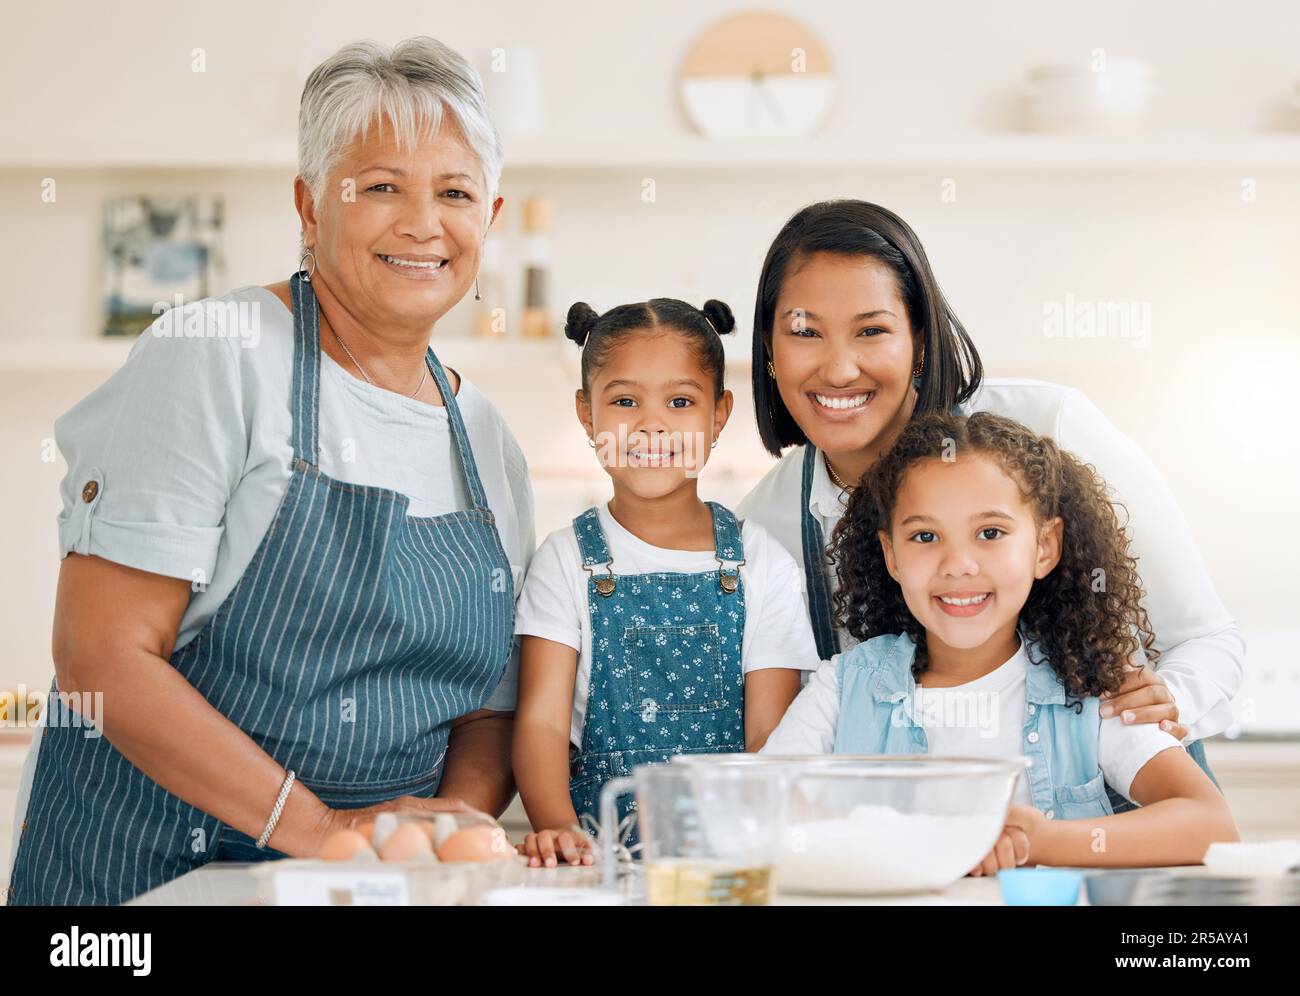 Porträt von Großmutter, mutter oder Kindern, die in der Küche backen, als glückliche Familie mit Geschwistern, die Kochkünste erlernen. Kuchen, Eltern oder Großmutter lächelnd oder Stockfoto